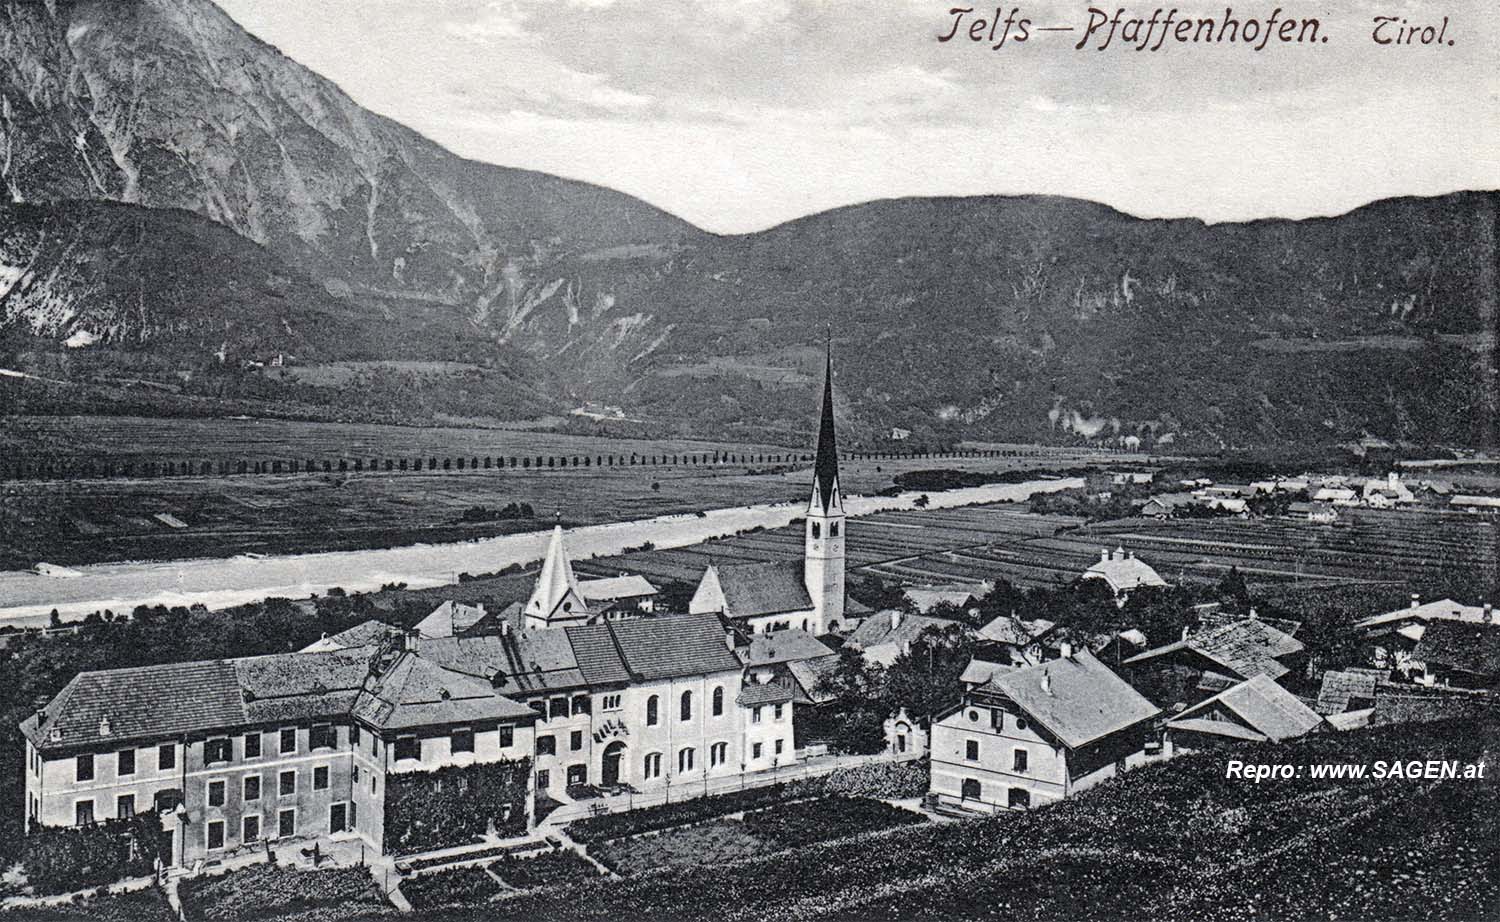 Telfs-Pfaffenhofen, Tirol